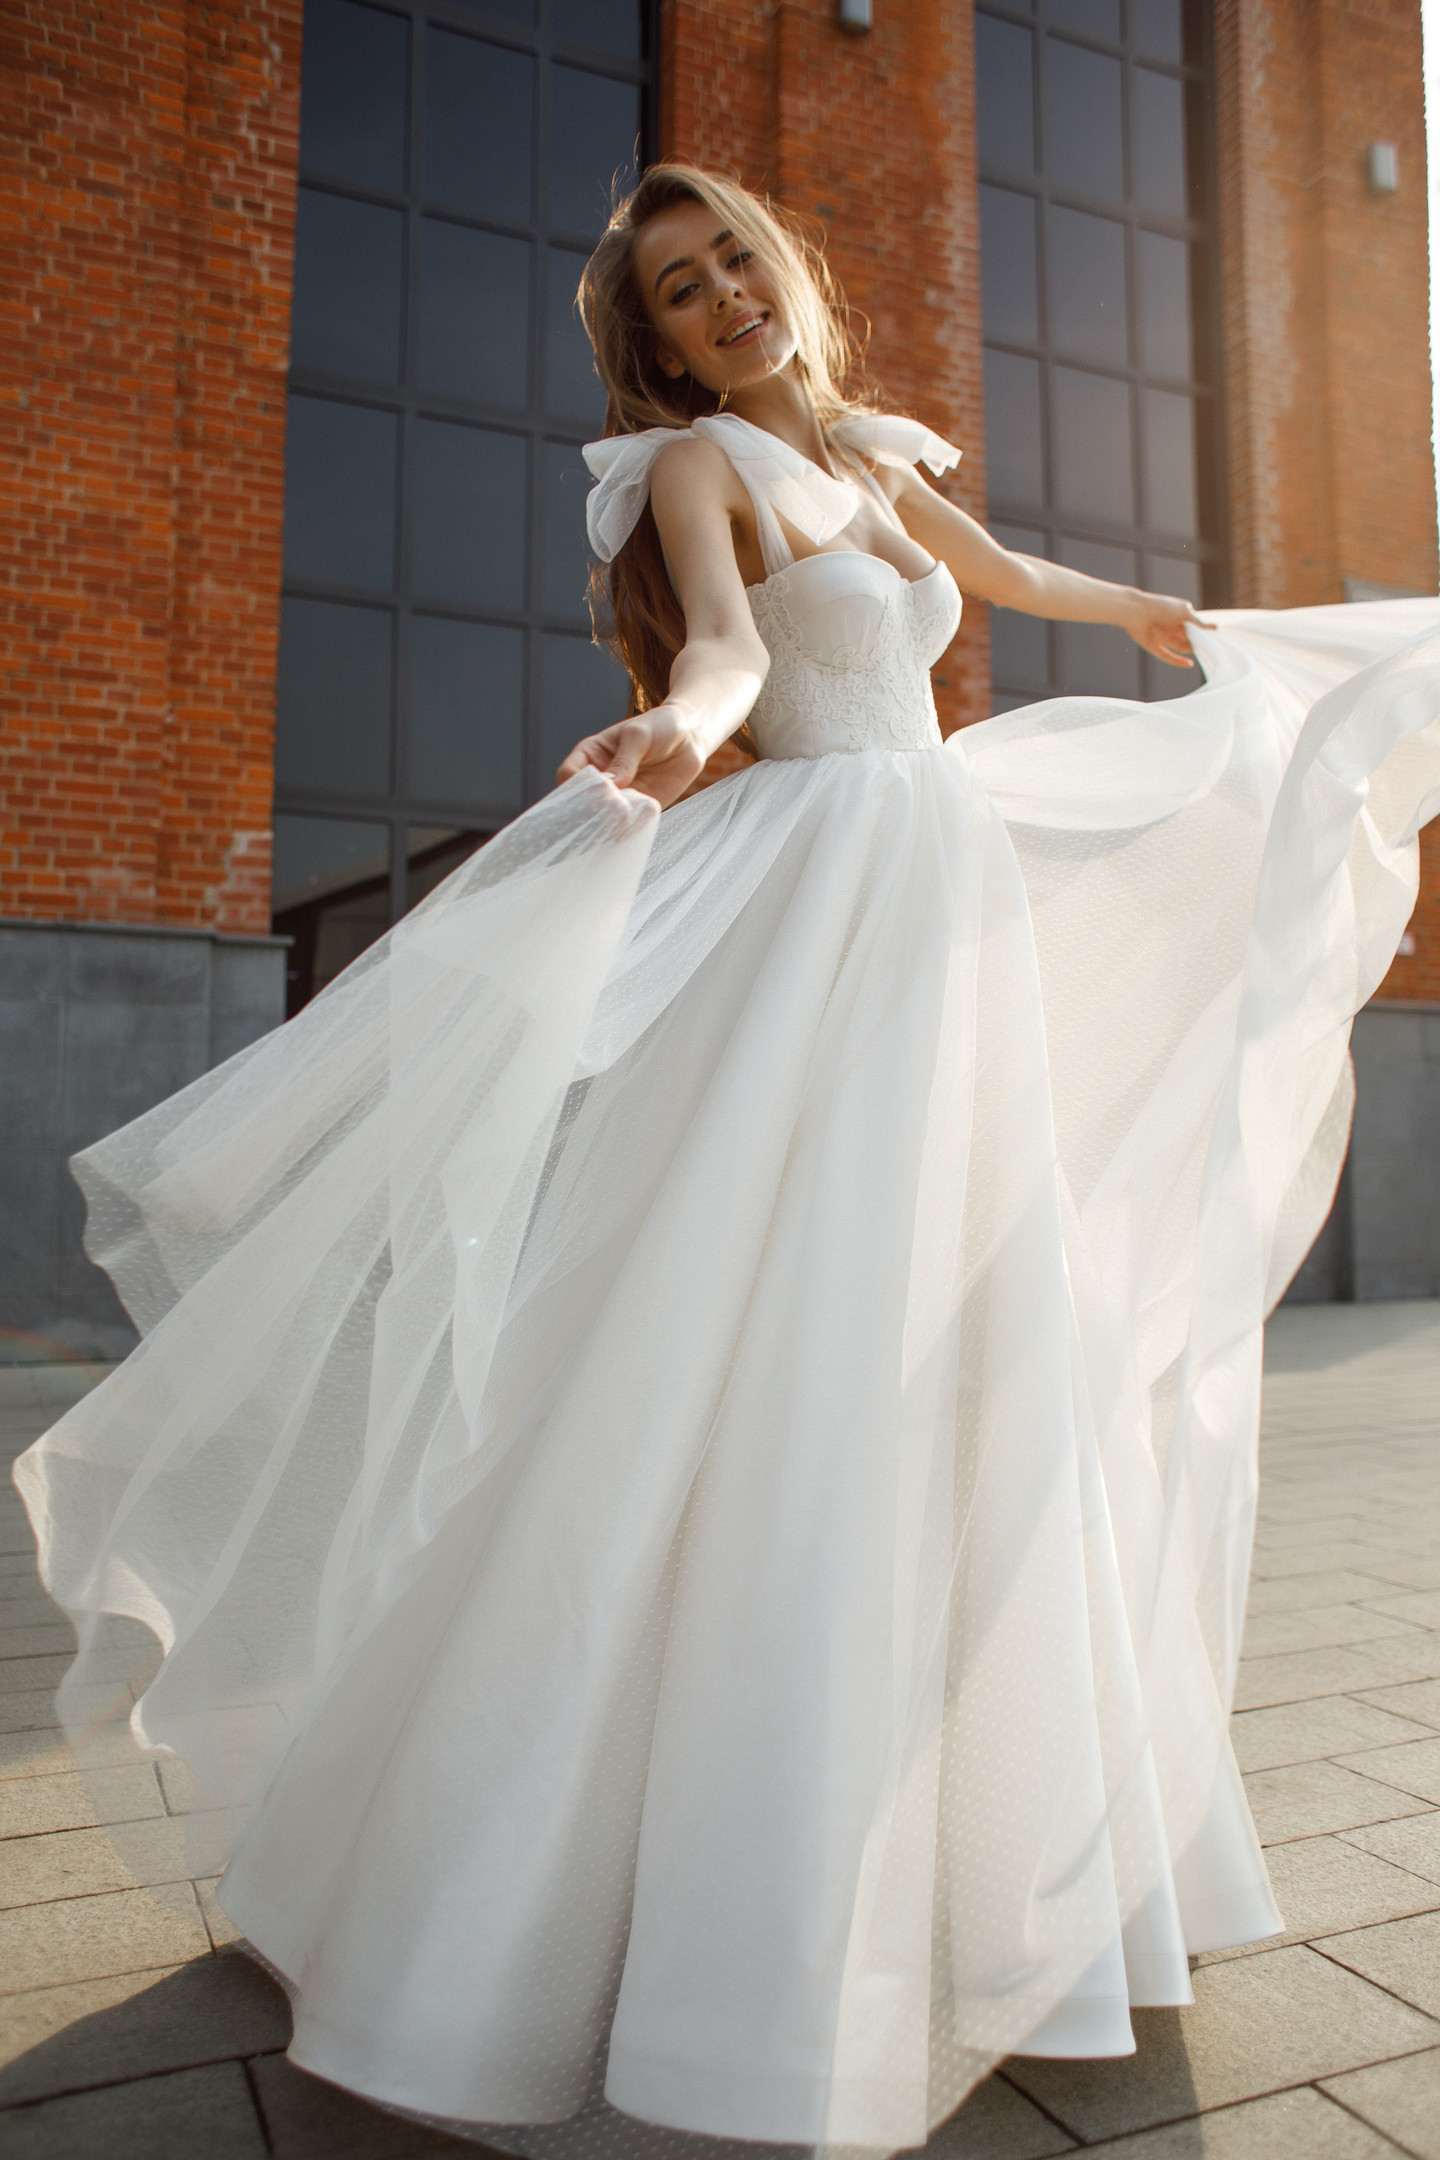 Платье Розали, 2020, одежда, платье, свадебное, молочно-белый, кружево, бежевый, вышивка, А-силуэт, шнуровка, популярное